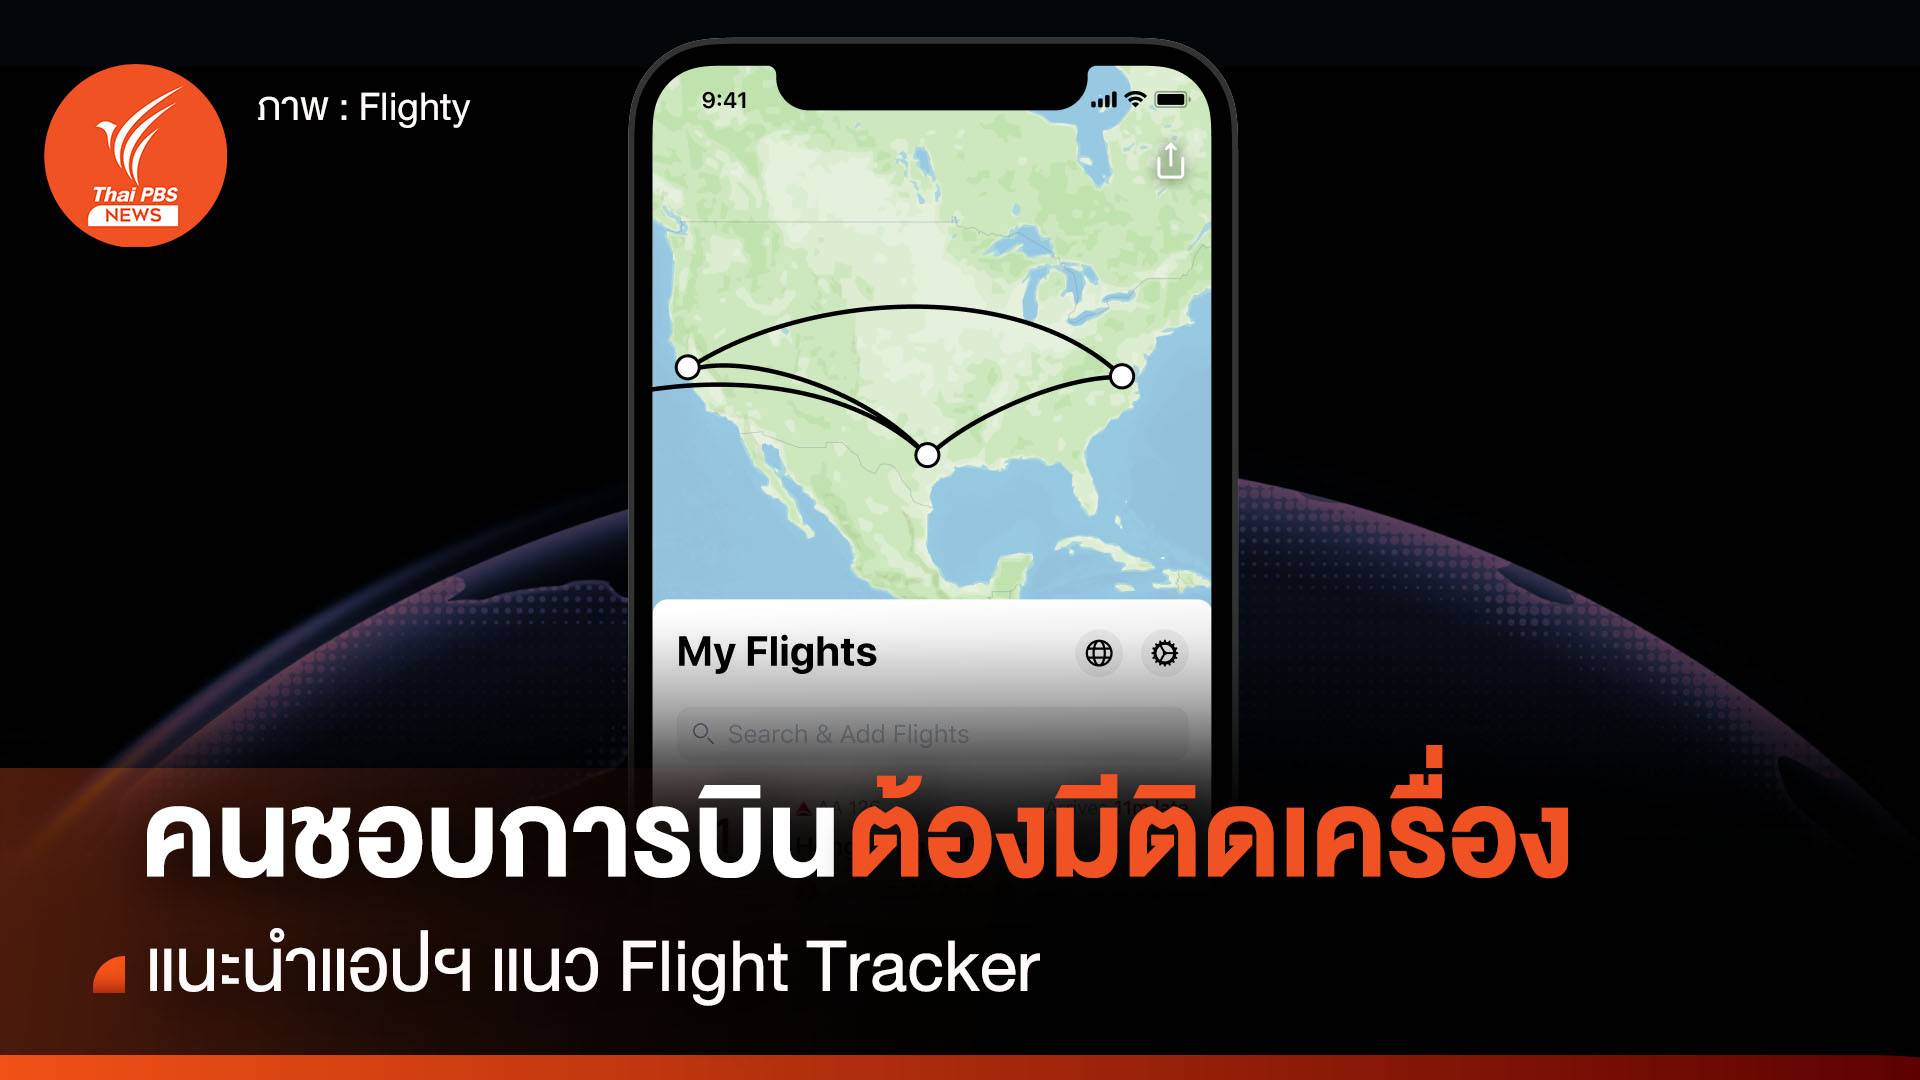 แนะนำ 2 แอปฯ ตระกูล Flight tracker ใครชอบการบินต้องมีติดเครื่อง